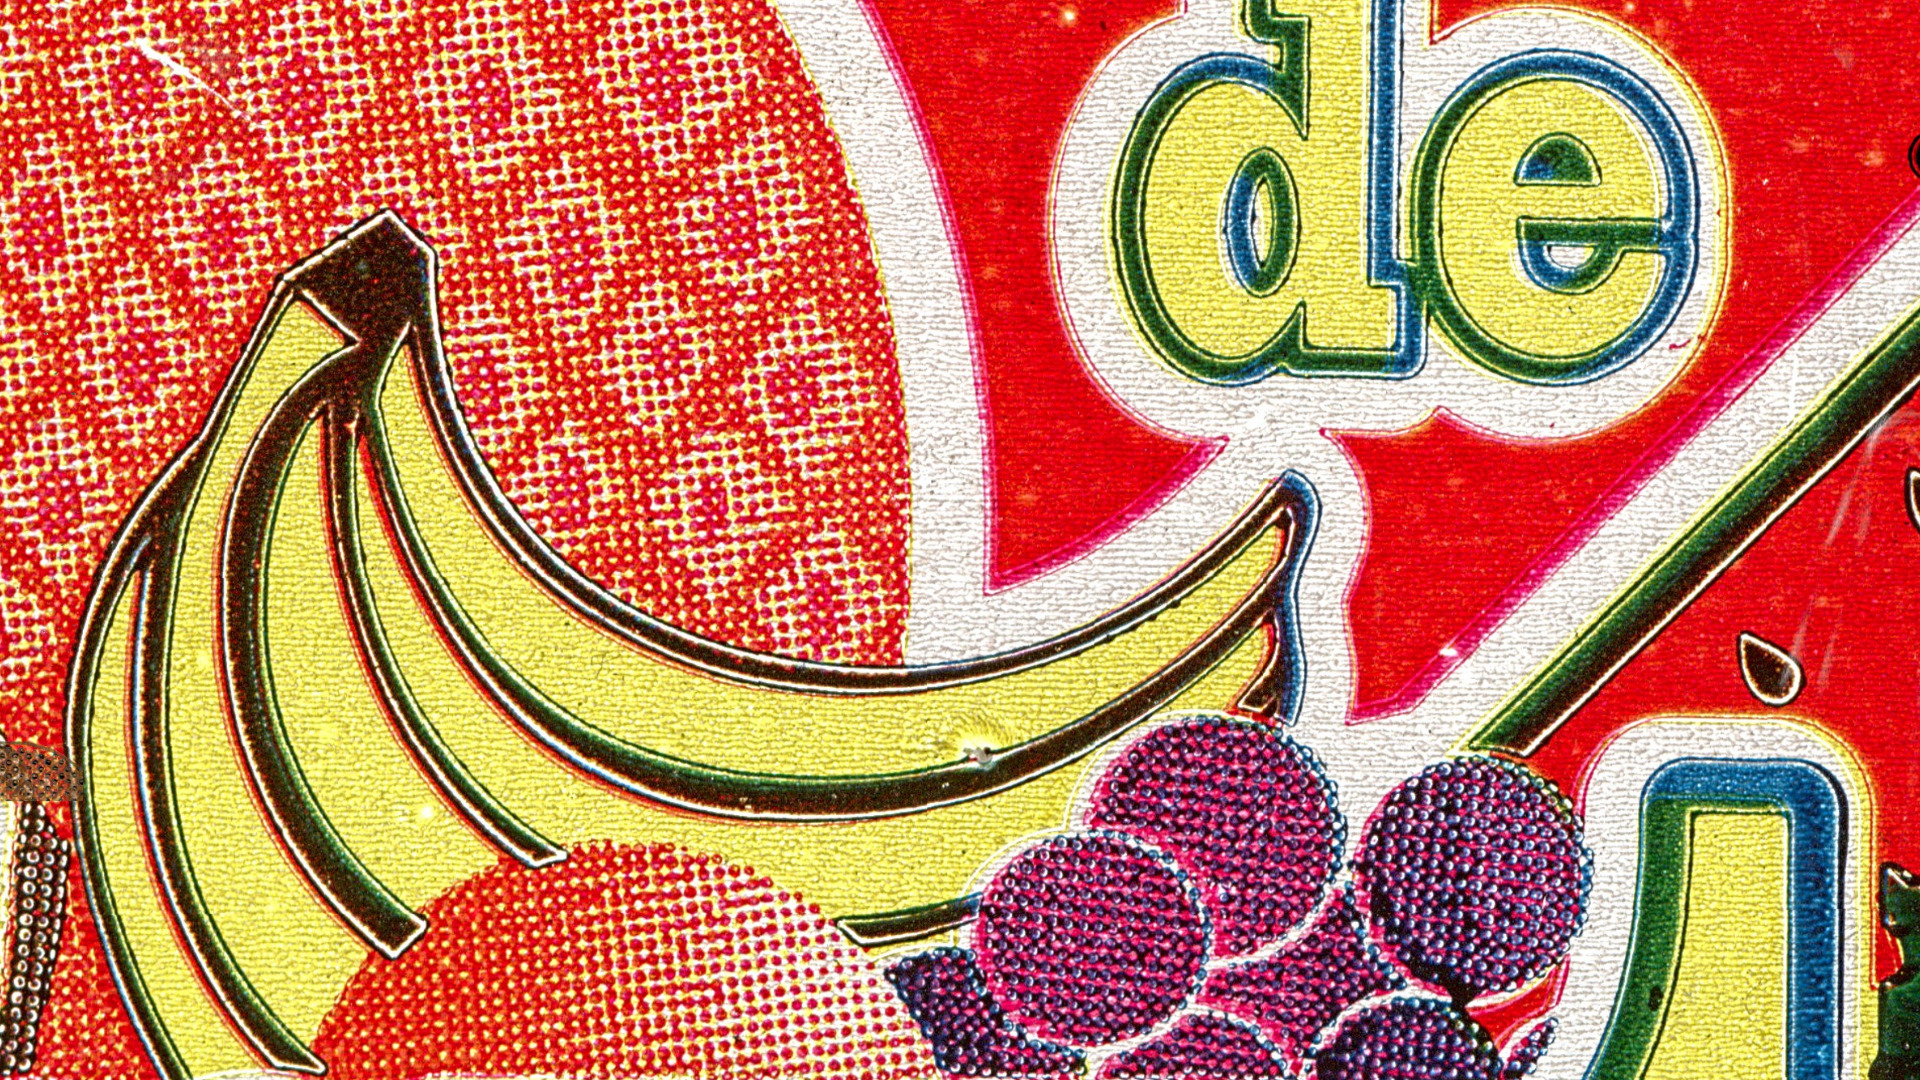 Detalhe da arte principal com destaque para o desenho de uma banana.